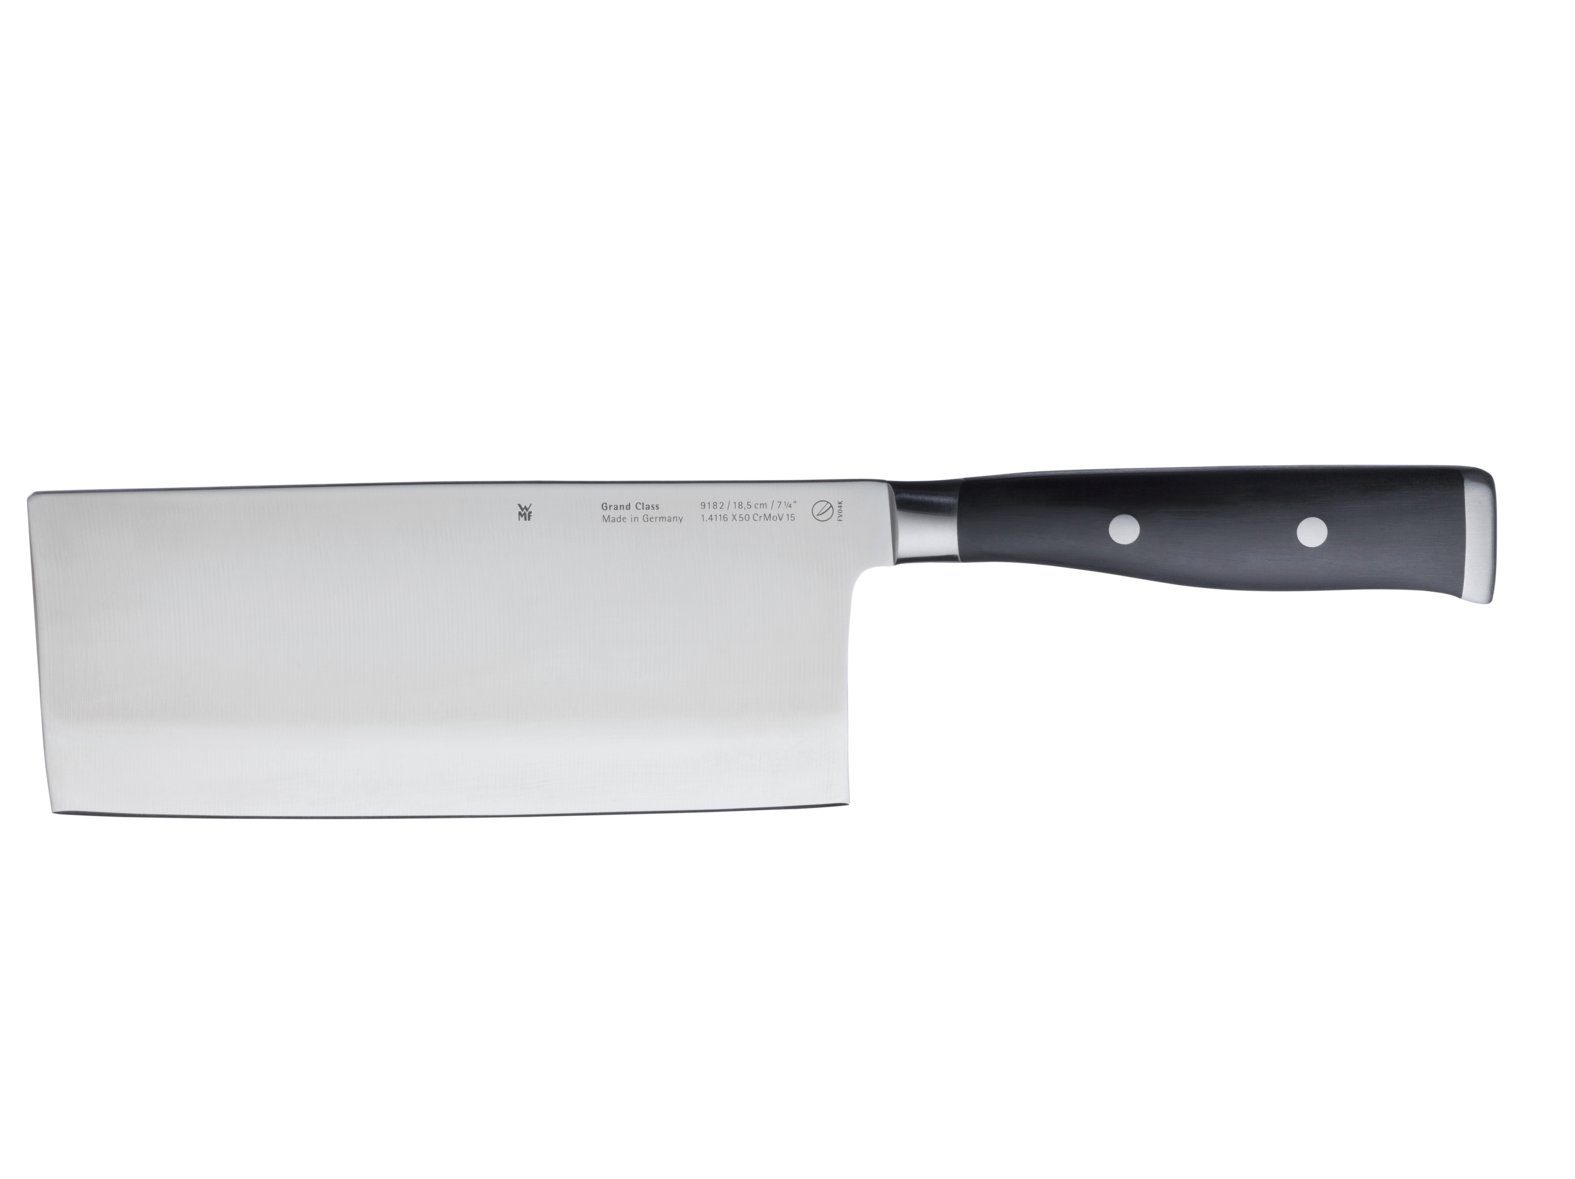 WMF Kochmesser Grand Class, Messer geschmiedet, Performance Cut, Spezialklingenstahl